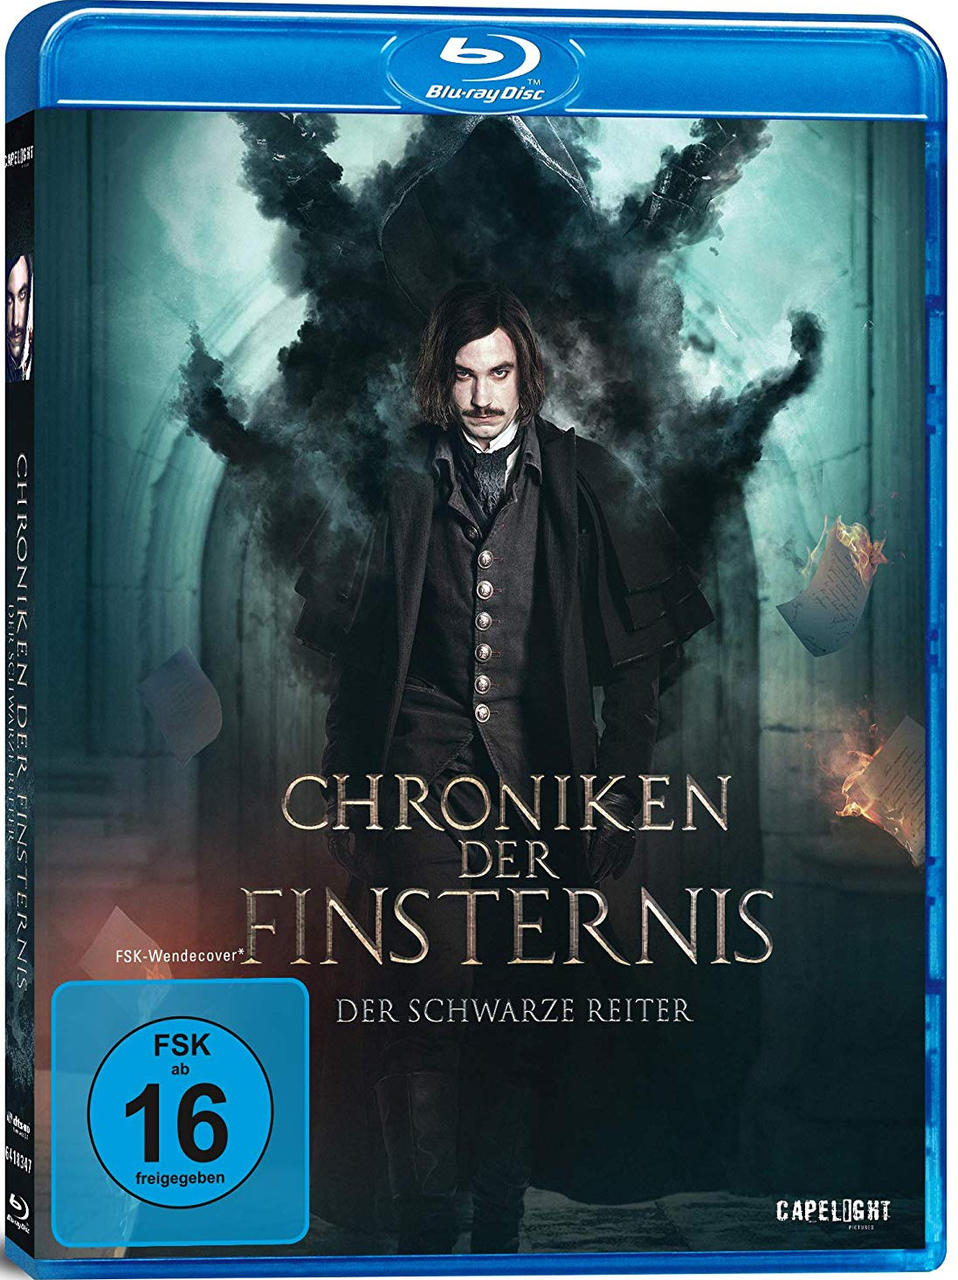 Reiter der - Der schwarze Finsternis Chroniken Blu-ray